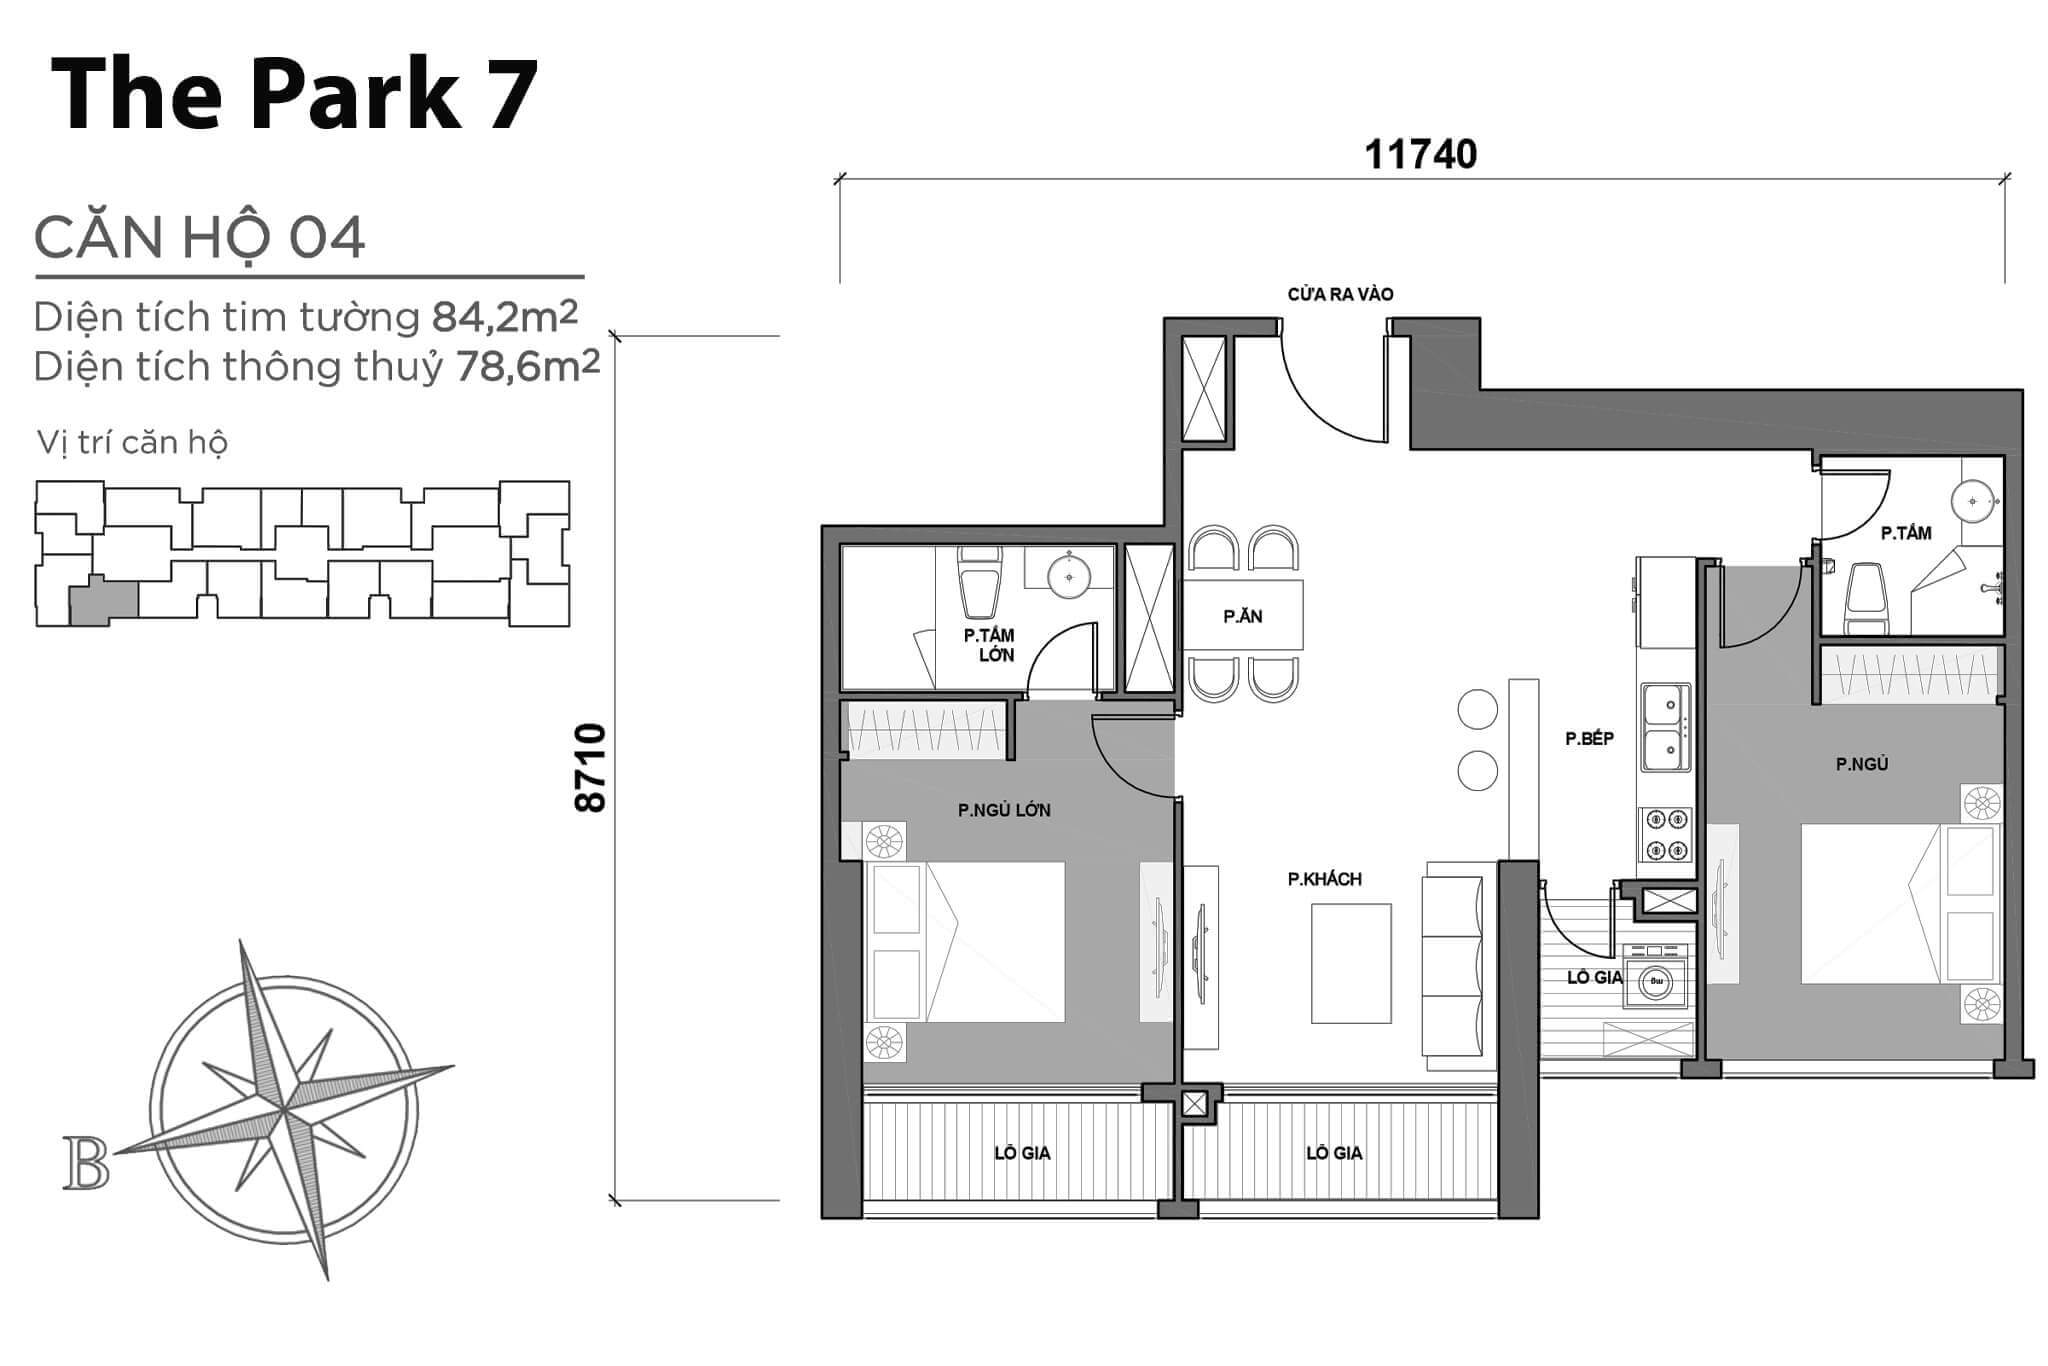 layout căn hộ số 04 tòa Park 7 P7-04